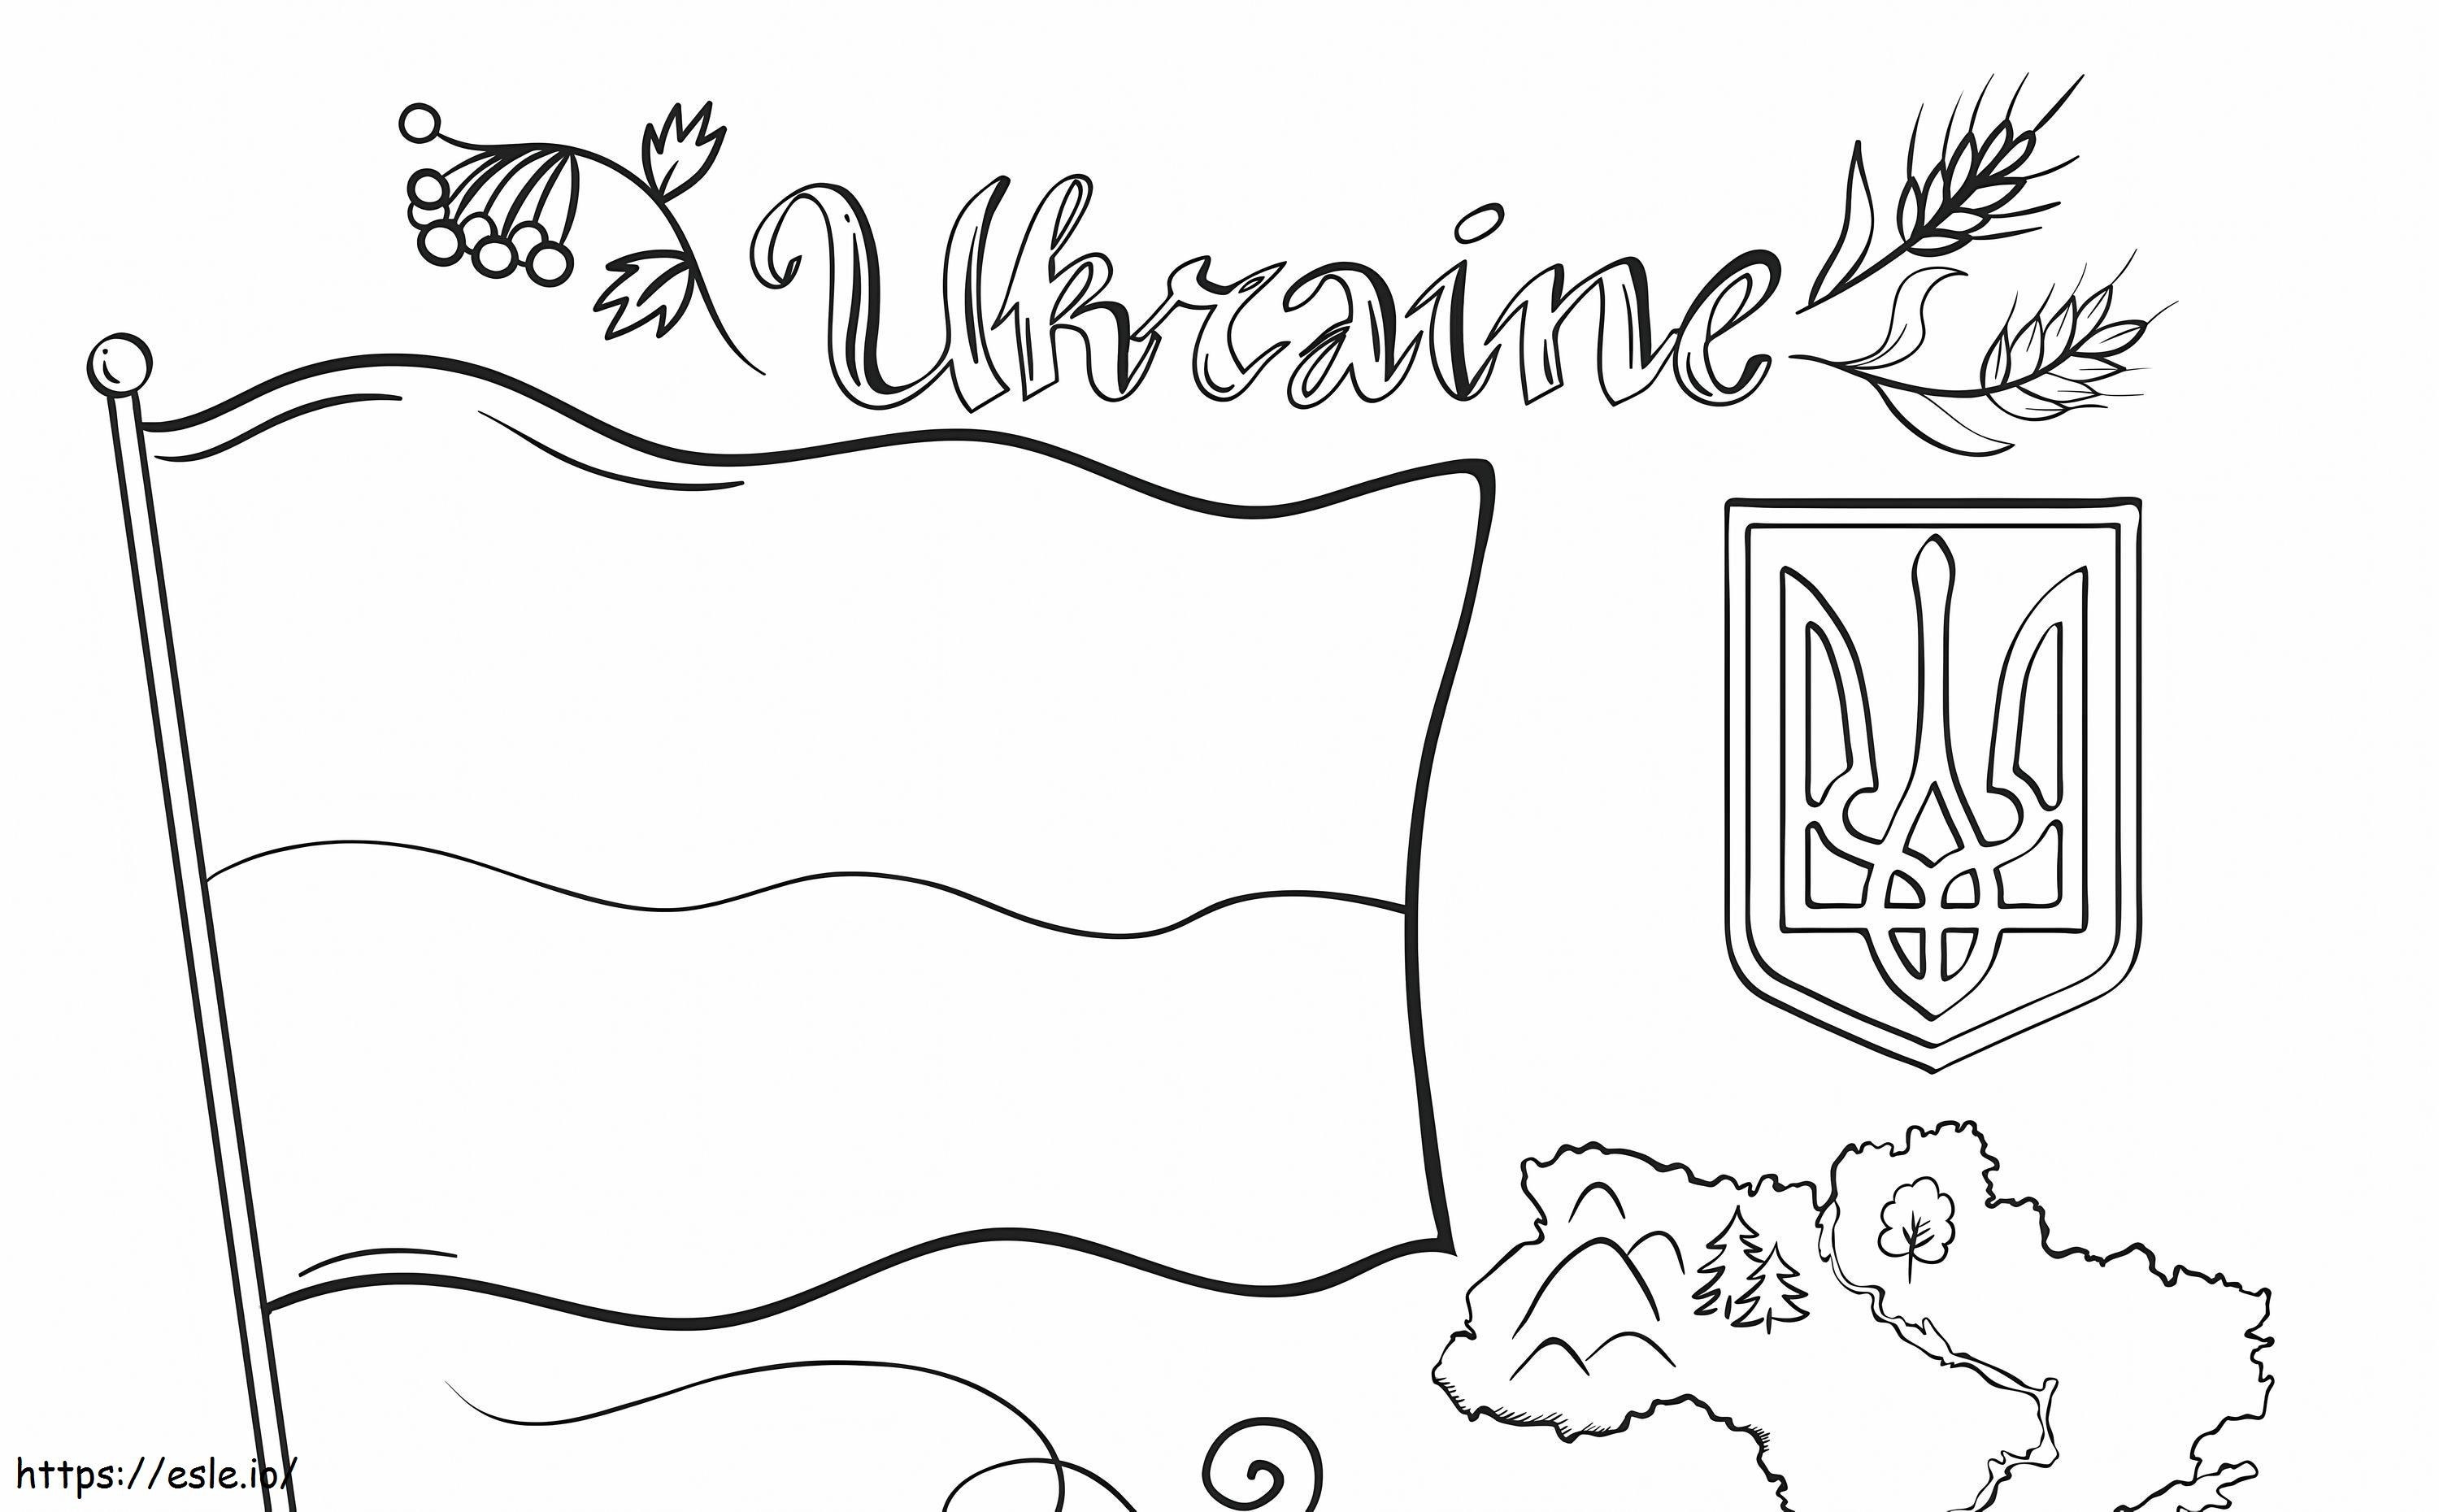 Bandera y mapa de Ucrania para colorear